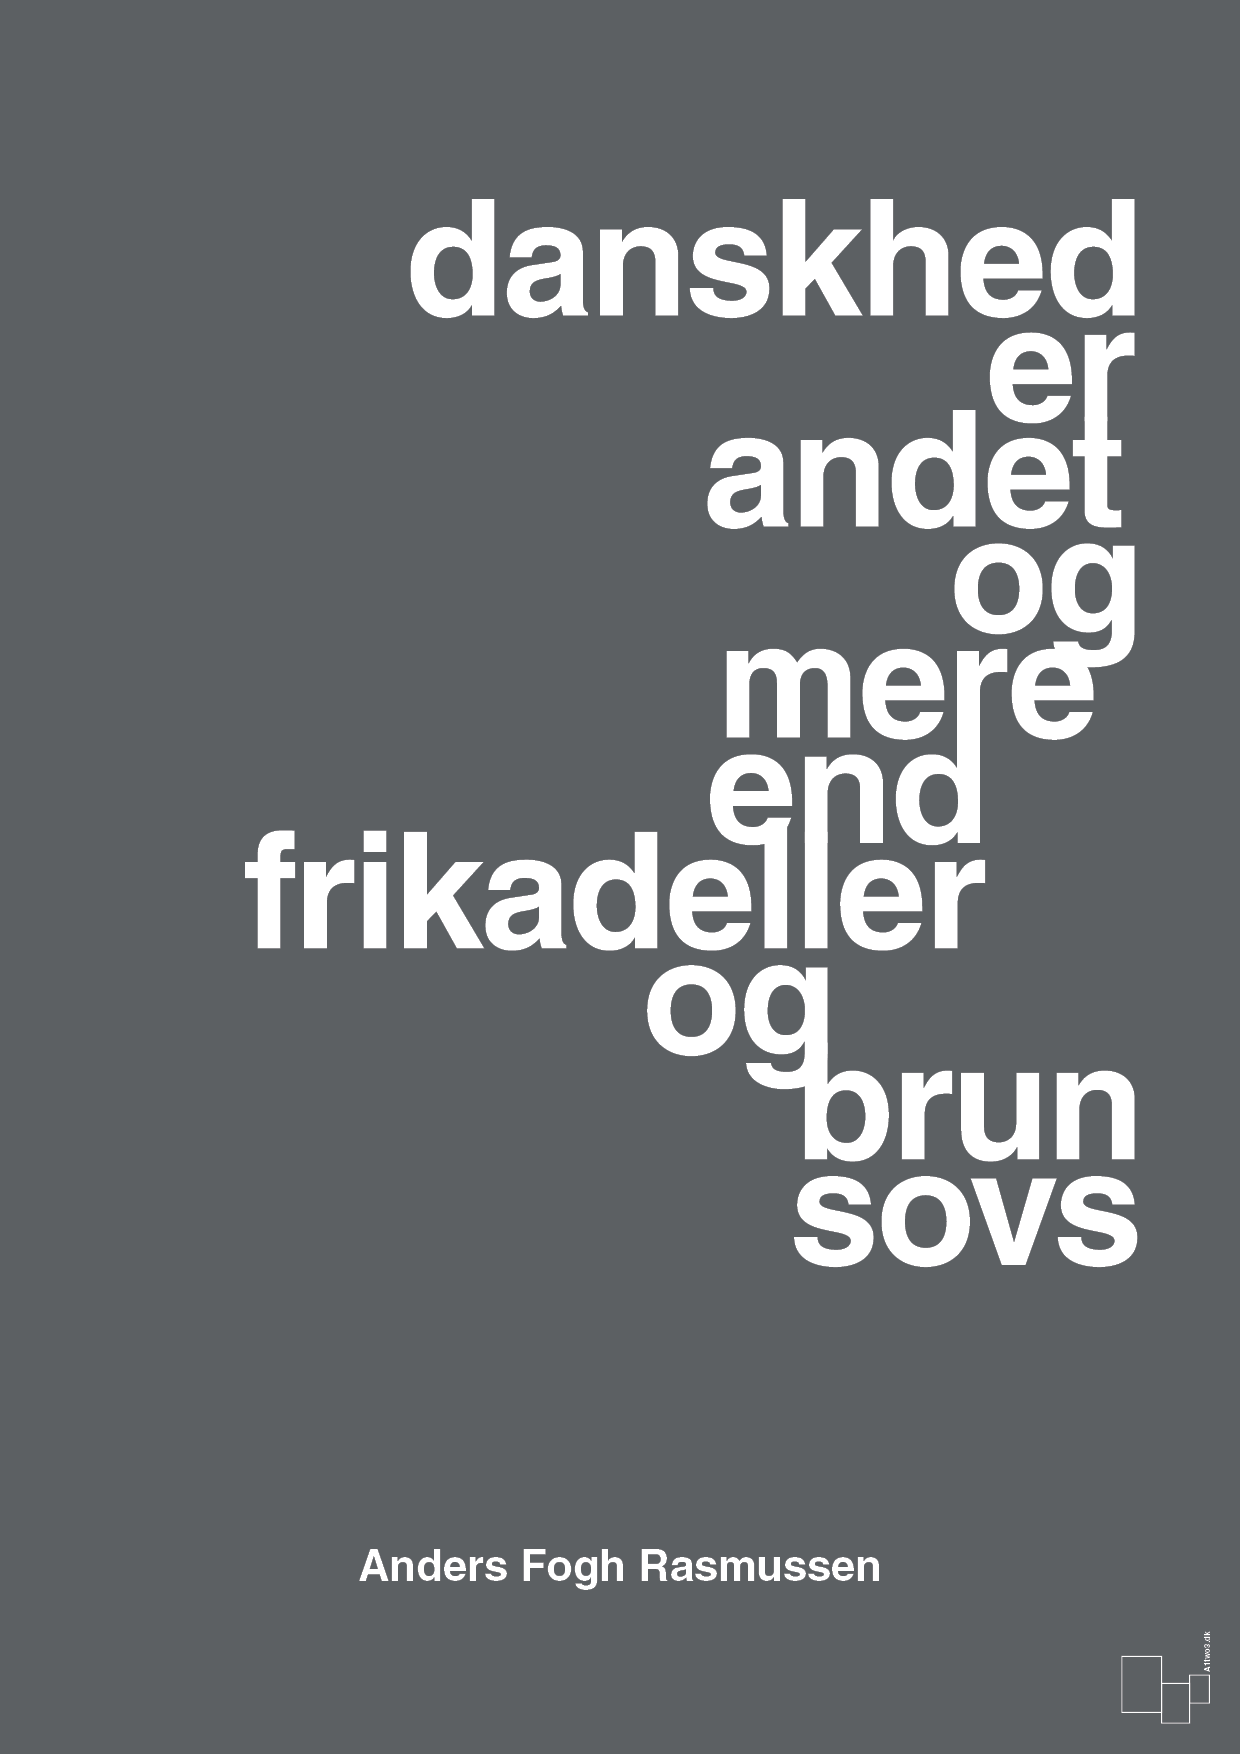 danskhed er andet og mere end frikadeller og brun sovs - Plakat med Citater i Graphic Charcoal